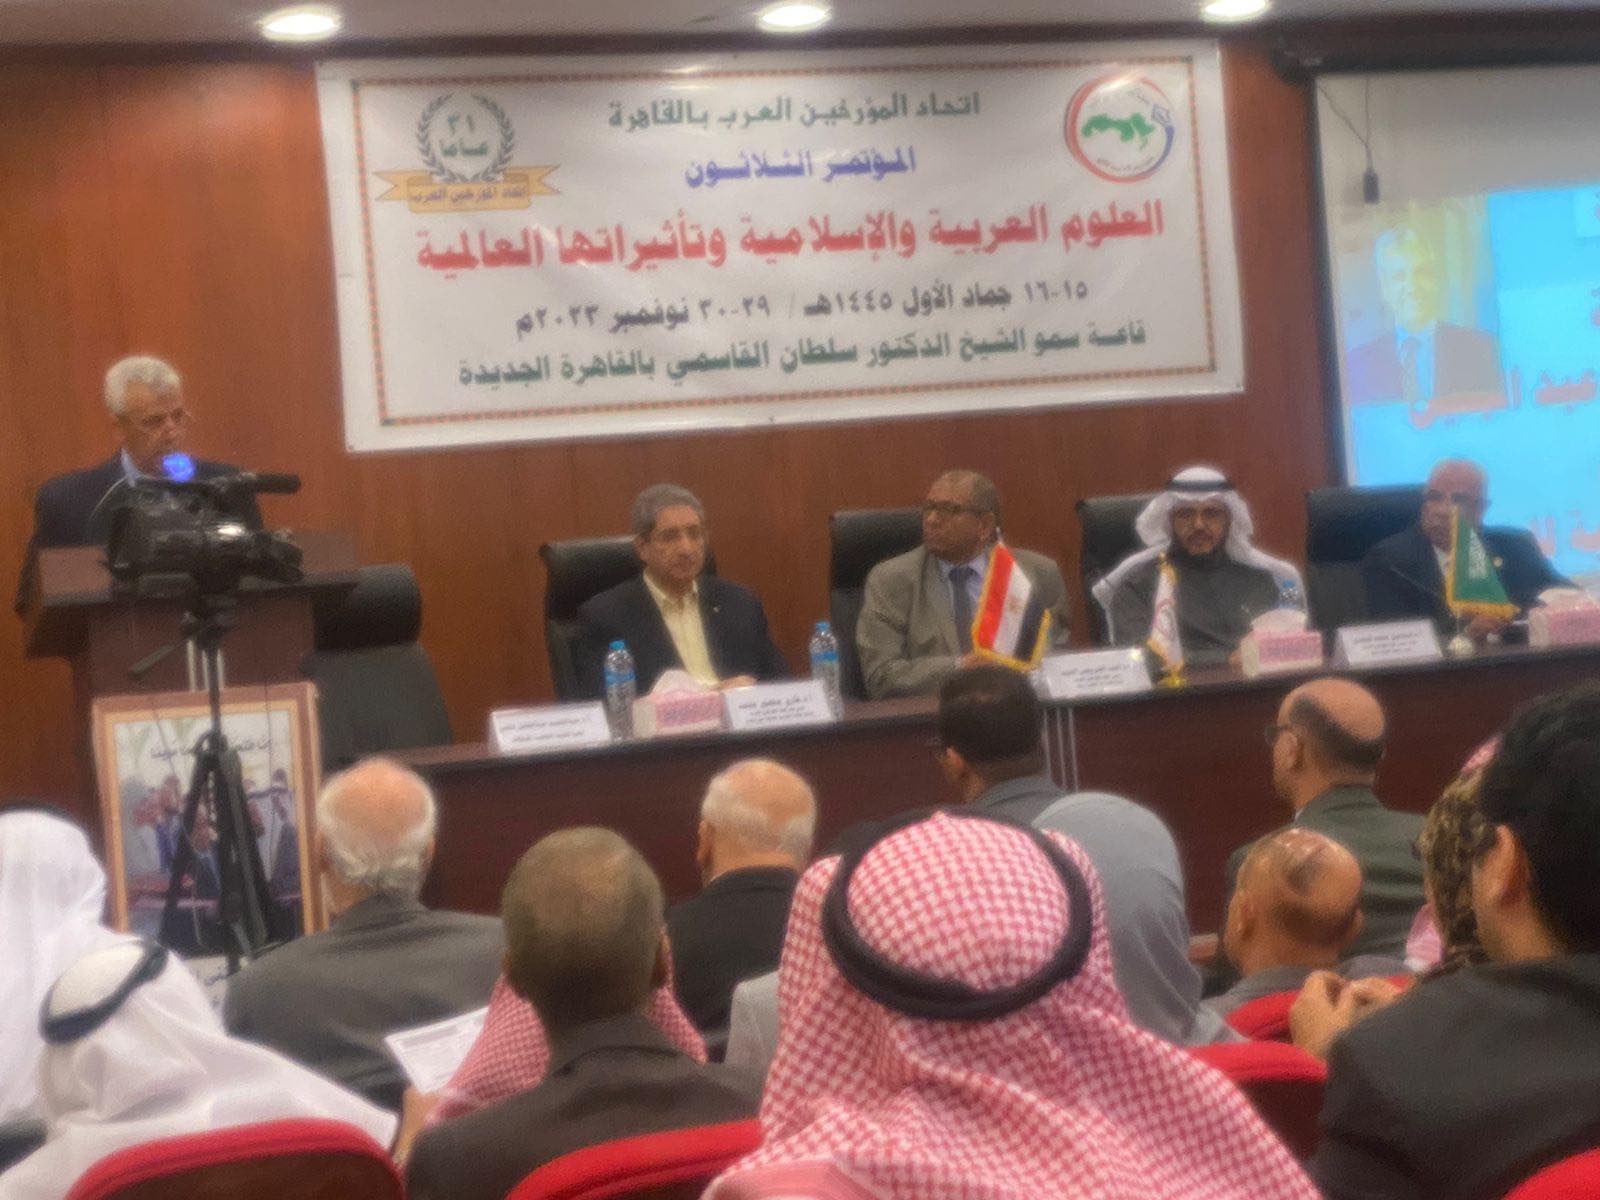 انطلاق أعمال المؤتمر الثلاثين لاتحاد المؤرخين العرب بالقاهرة| صور